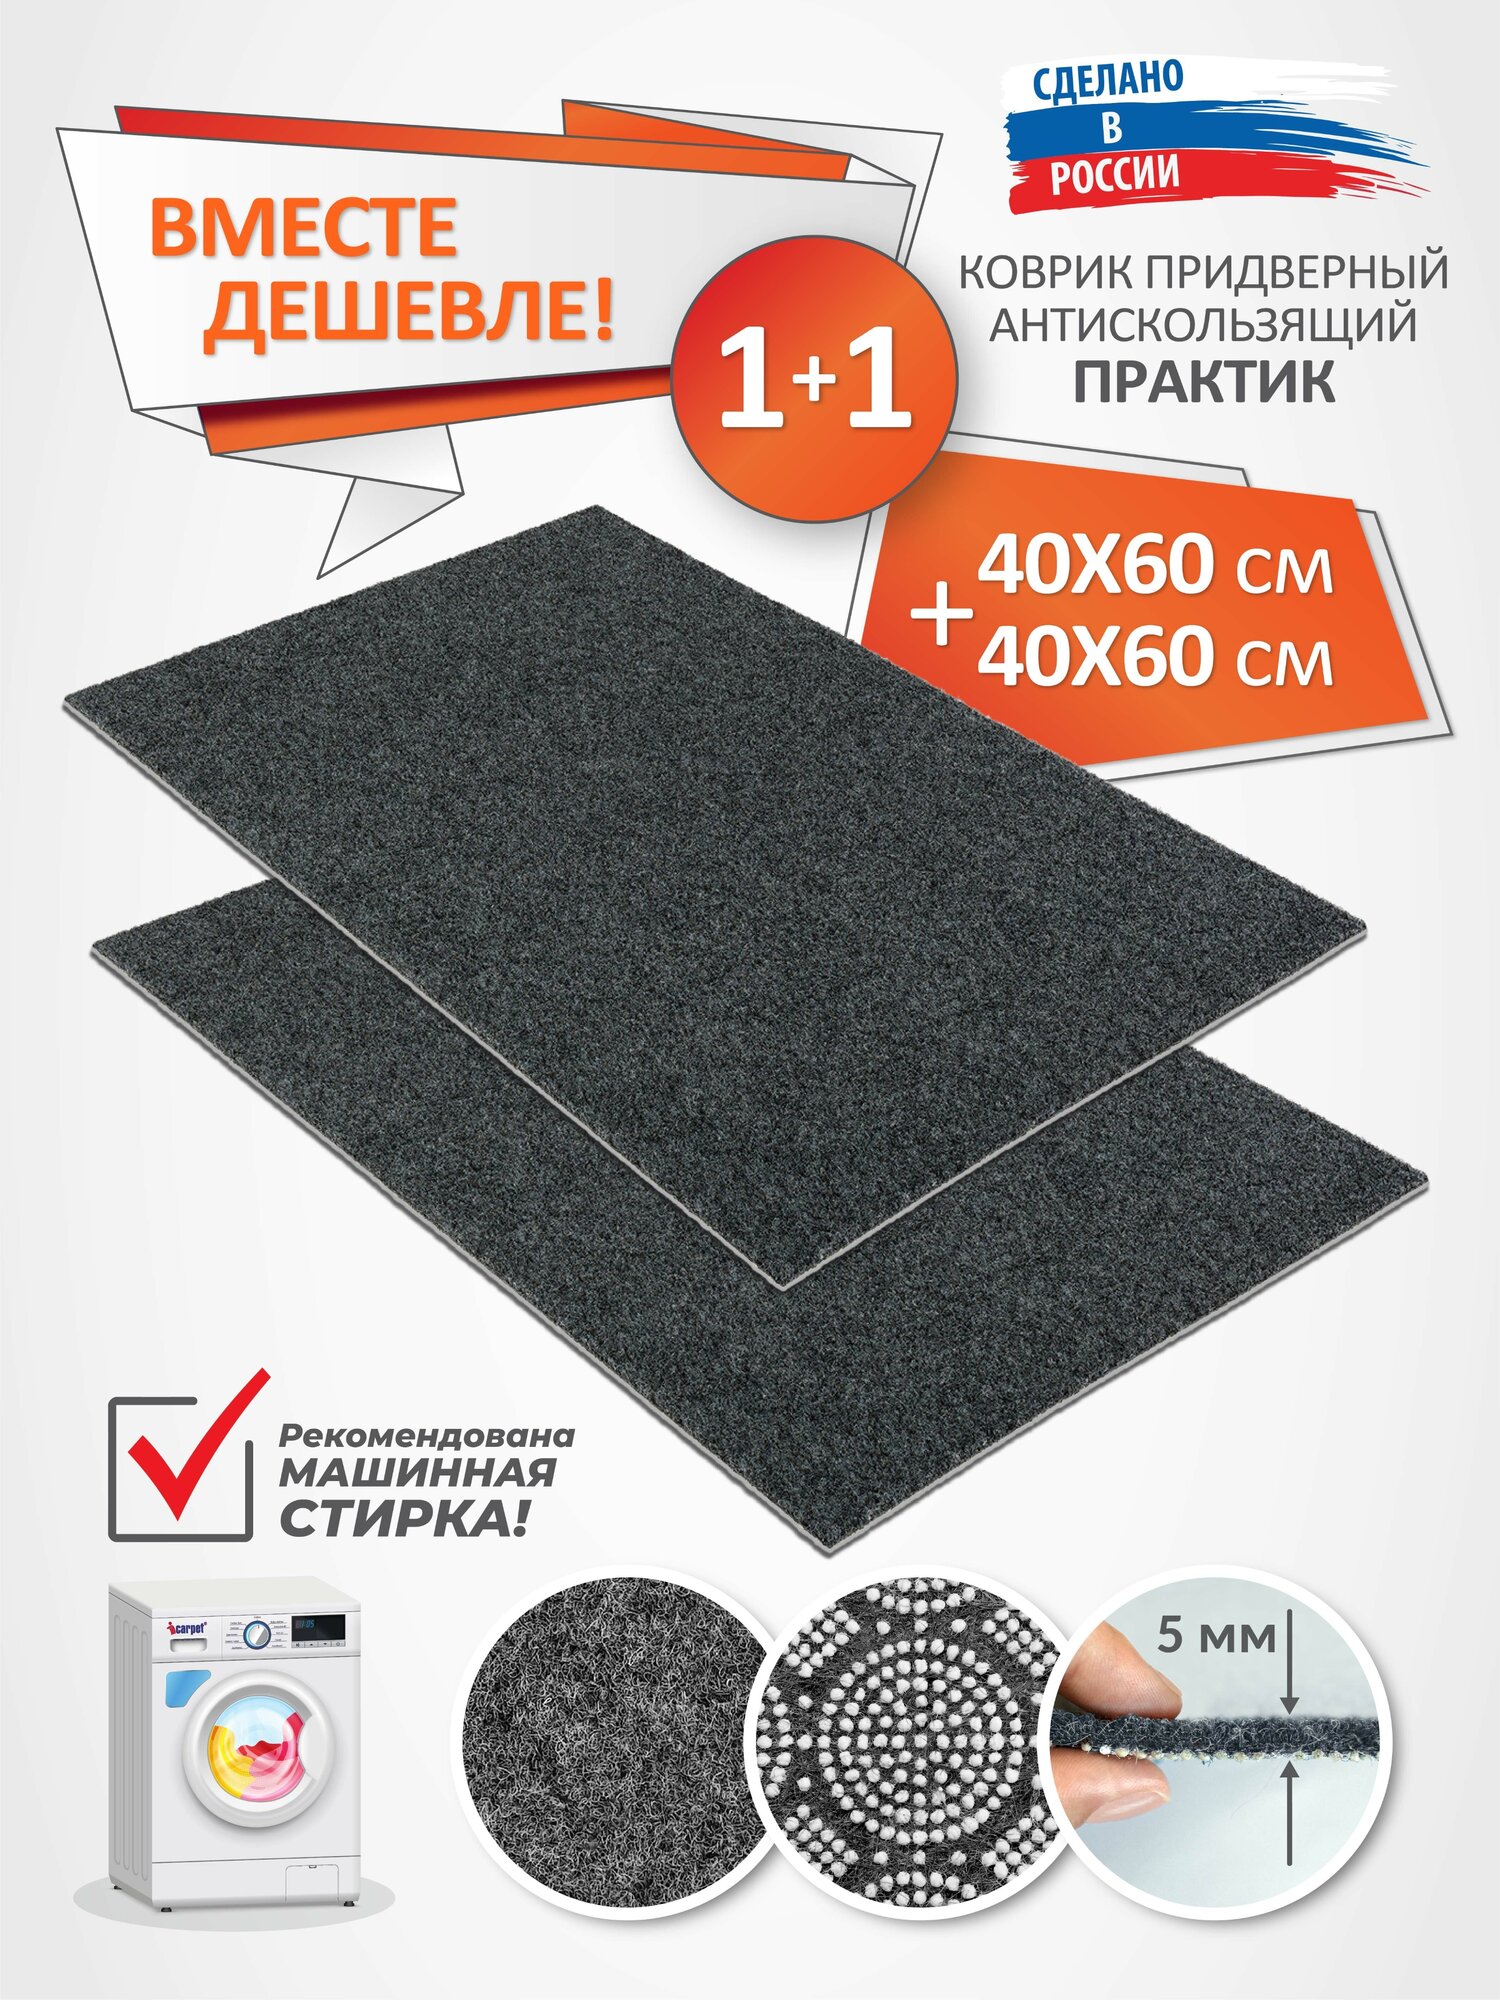 Набор придверный ковриков Icarpet практик 40х60+40х60 серый - фотография № 1